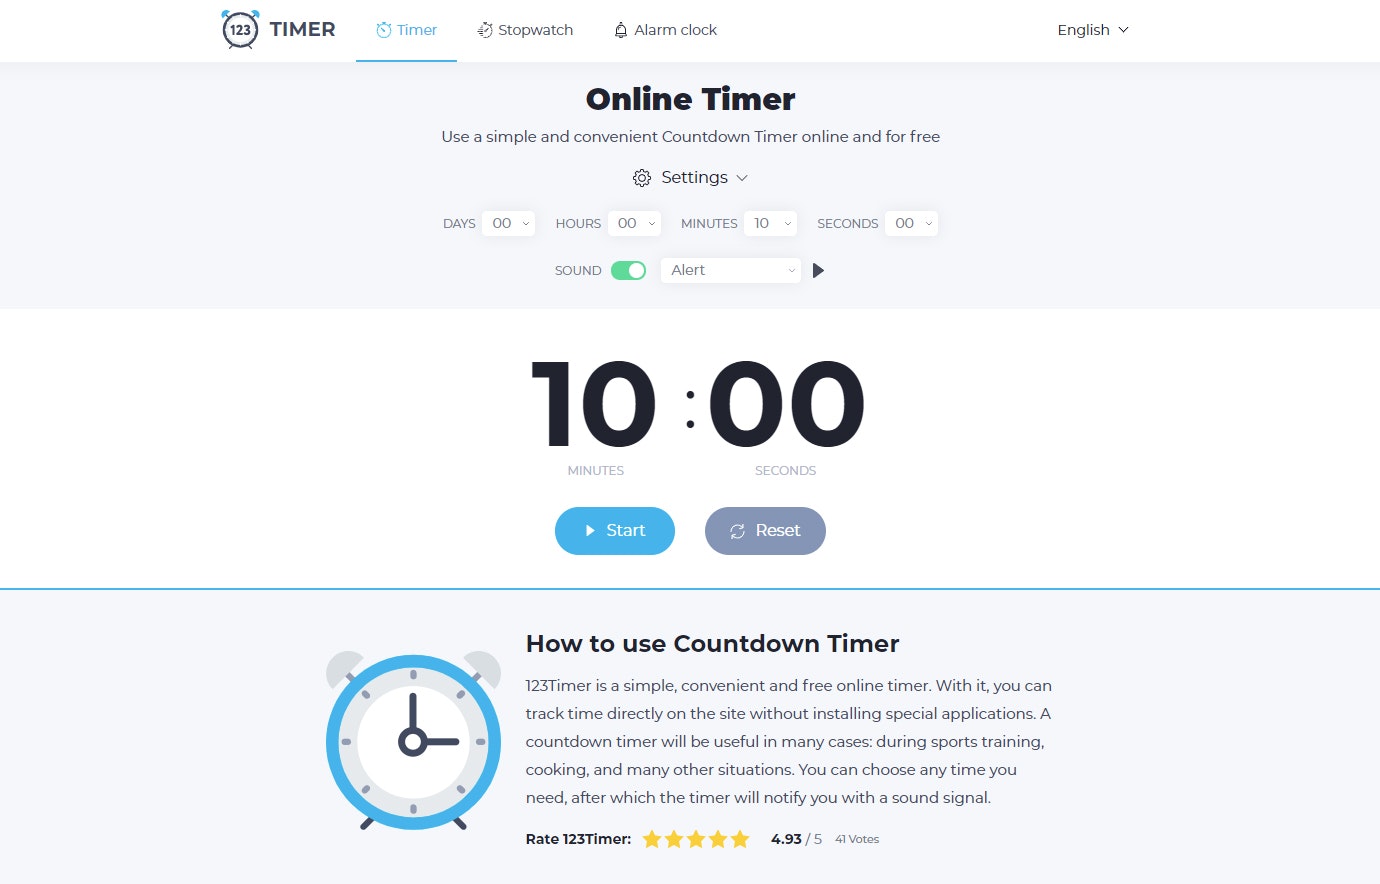 Timer - Online Timer